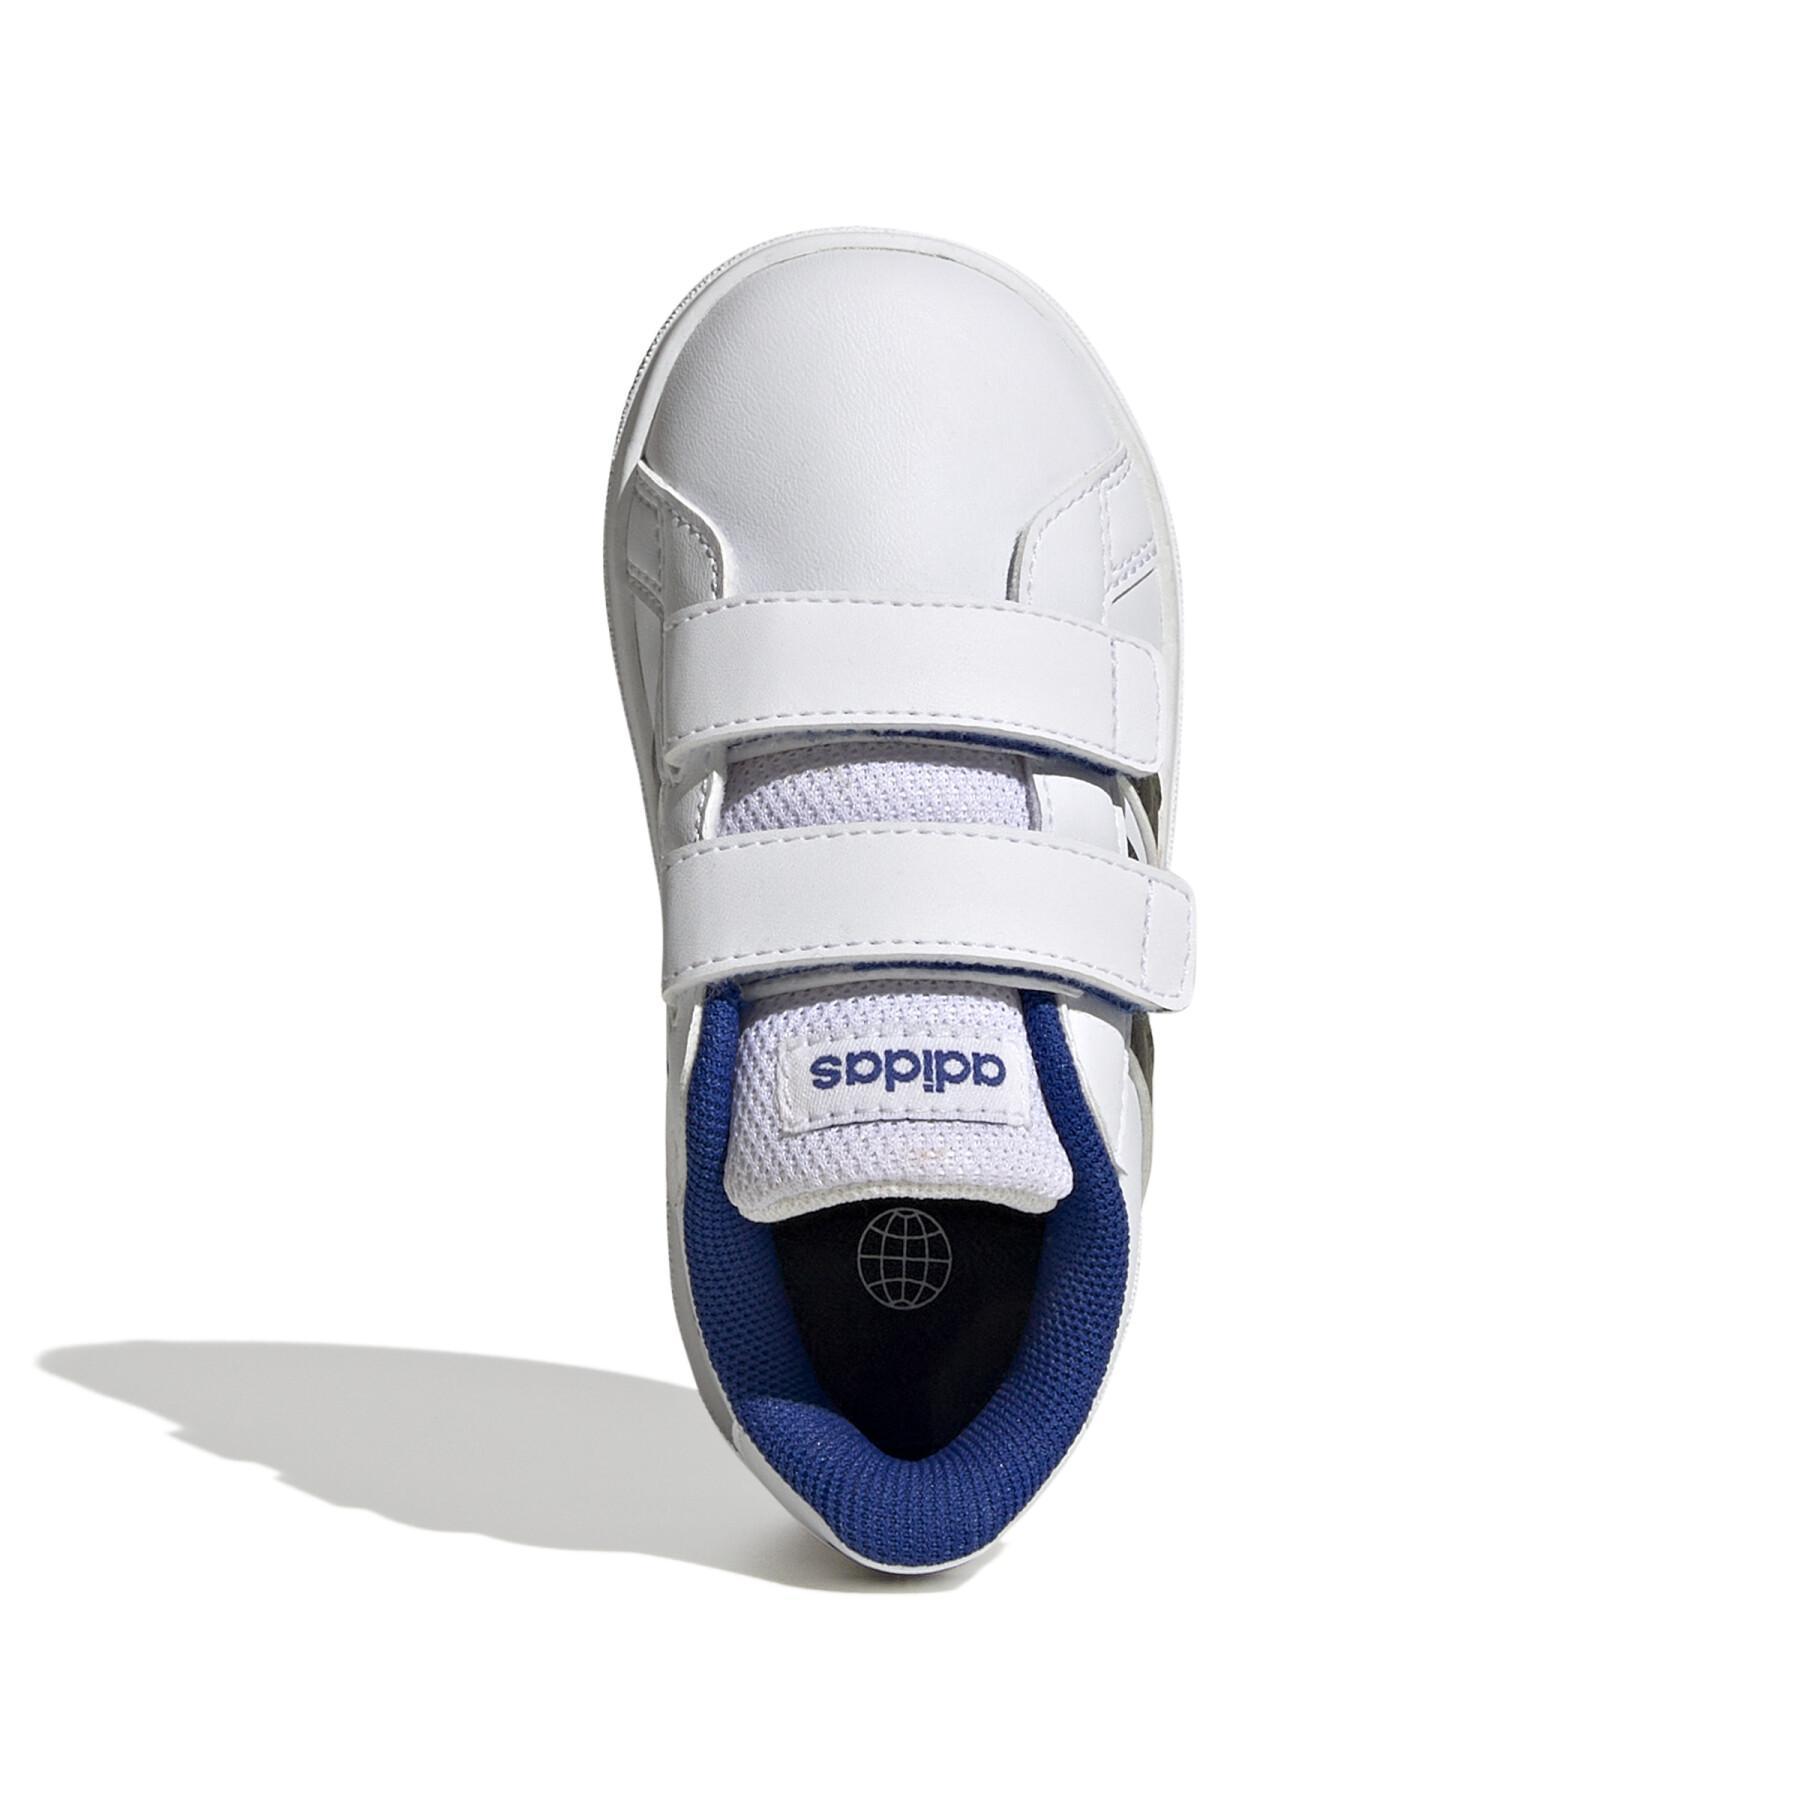 Kids' hook-and-loop sneakers big short adidas